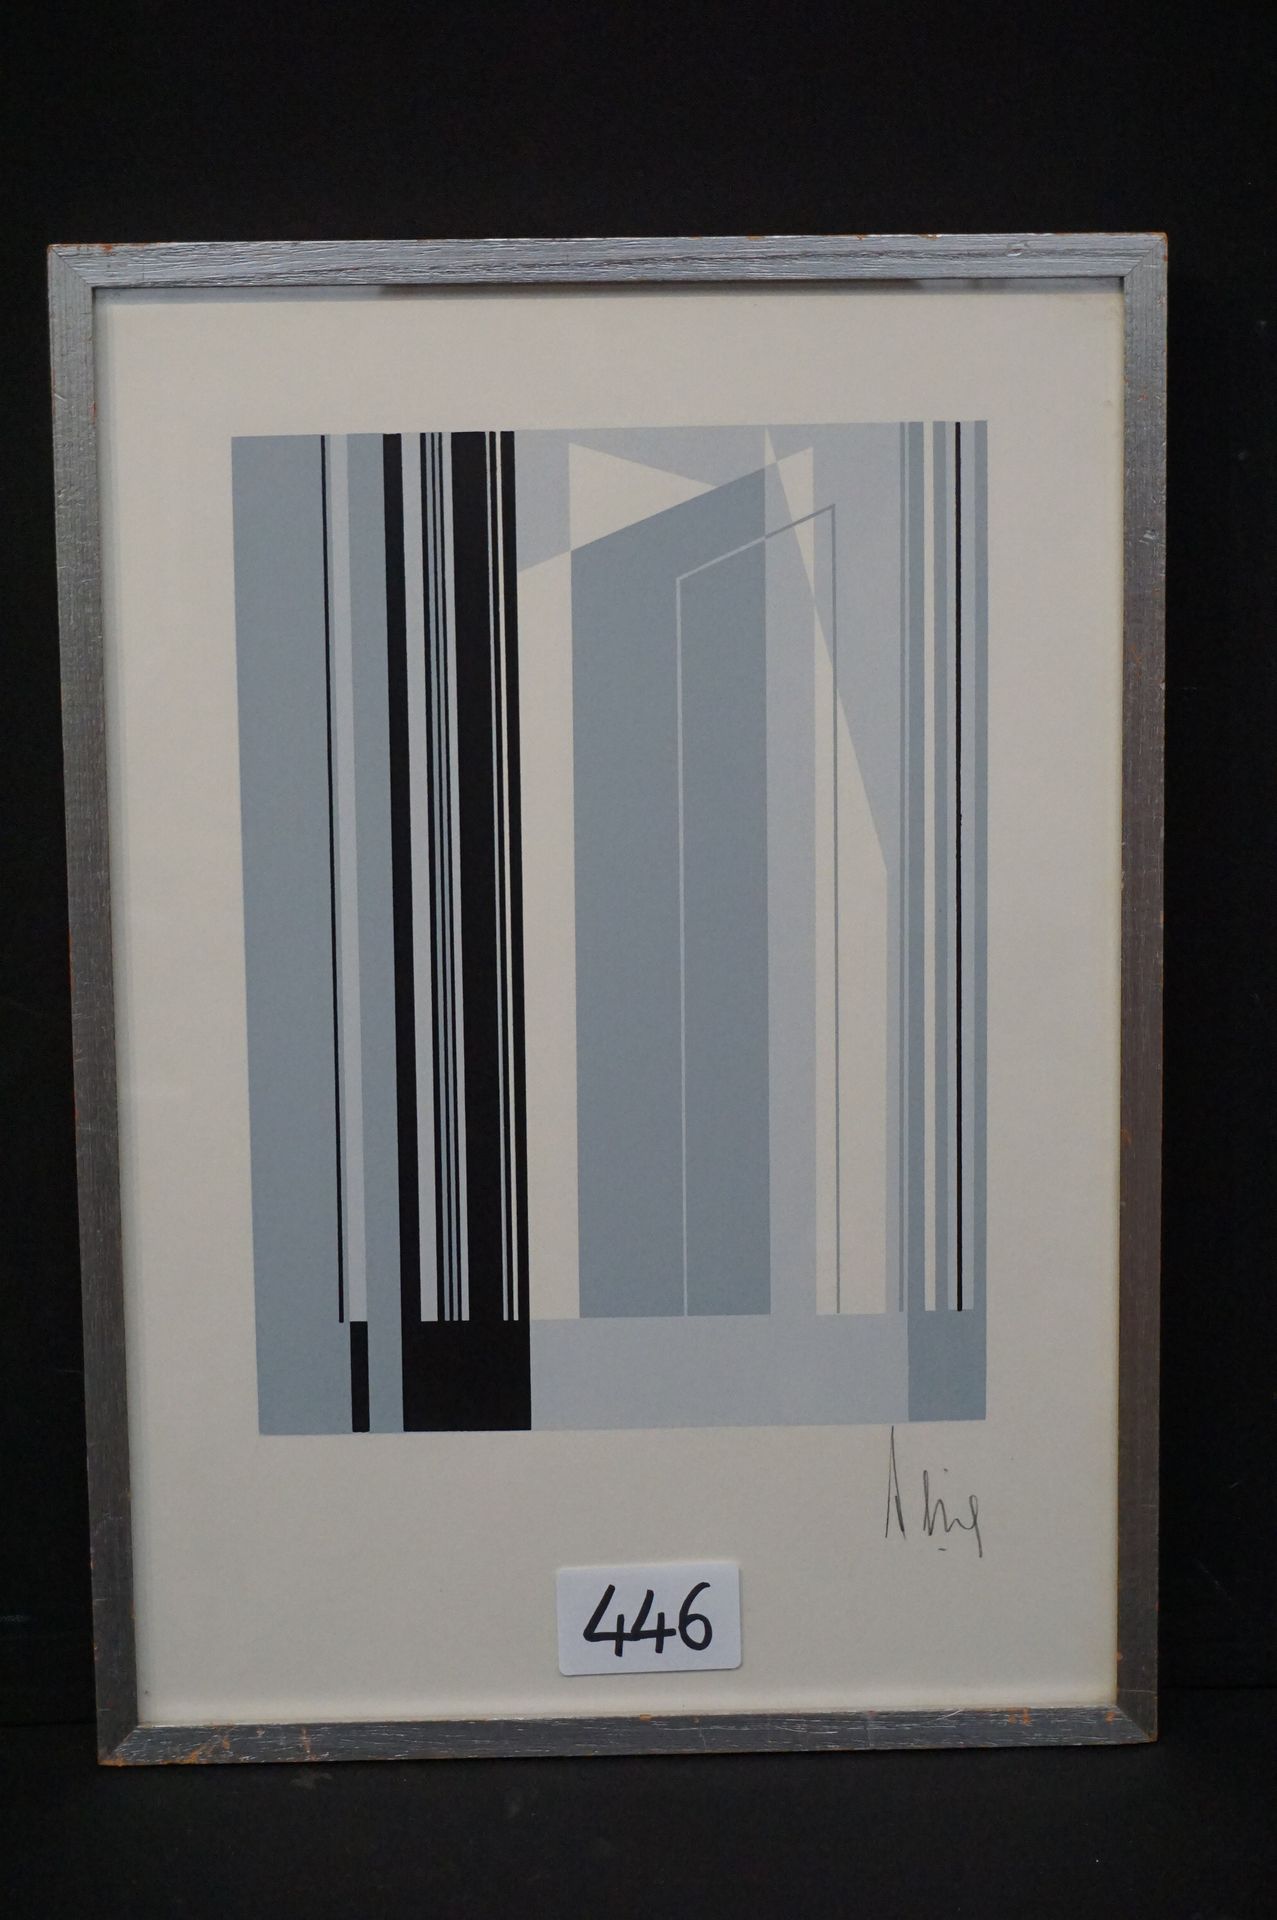 LUC PEIRE (1916 - 1994) "Geometric Composition" - Lithograph - 34 x 25 cm